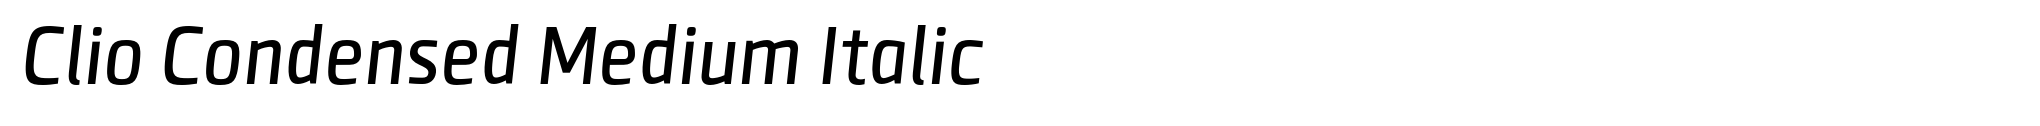 Clio Condensed Medium Italic image